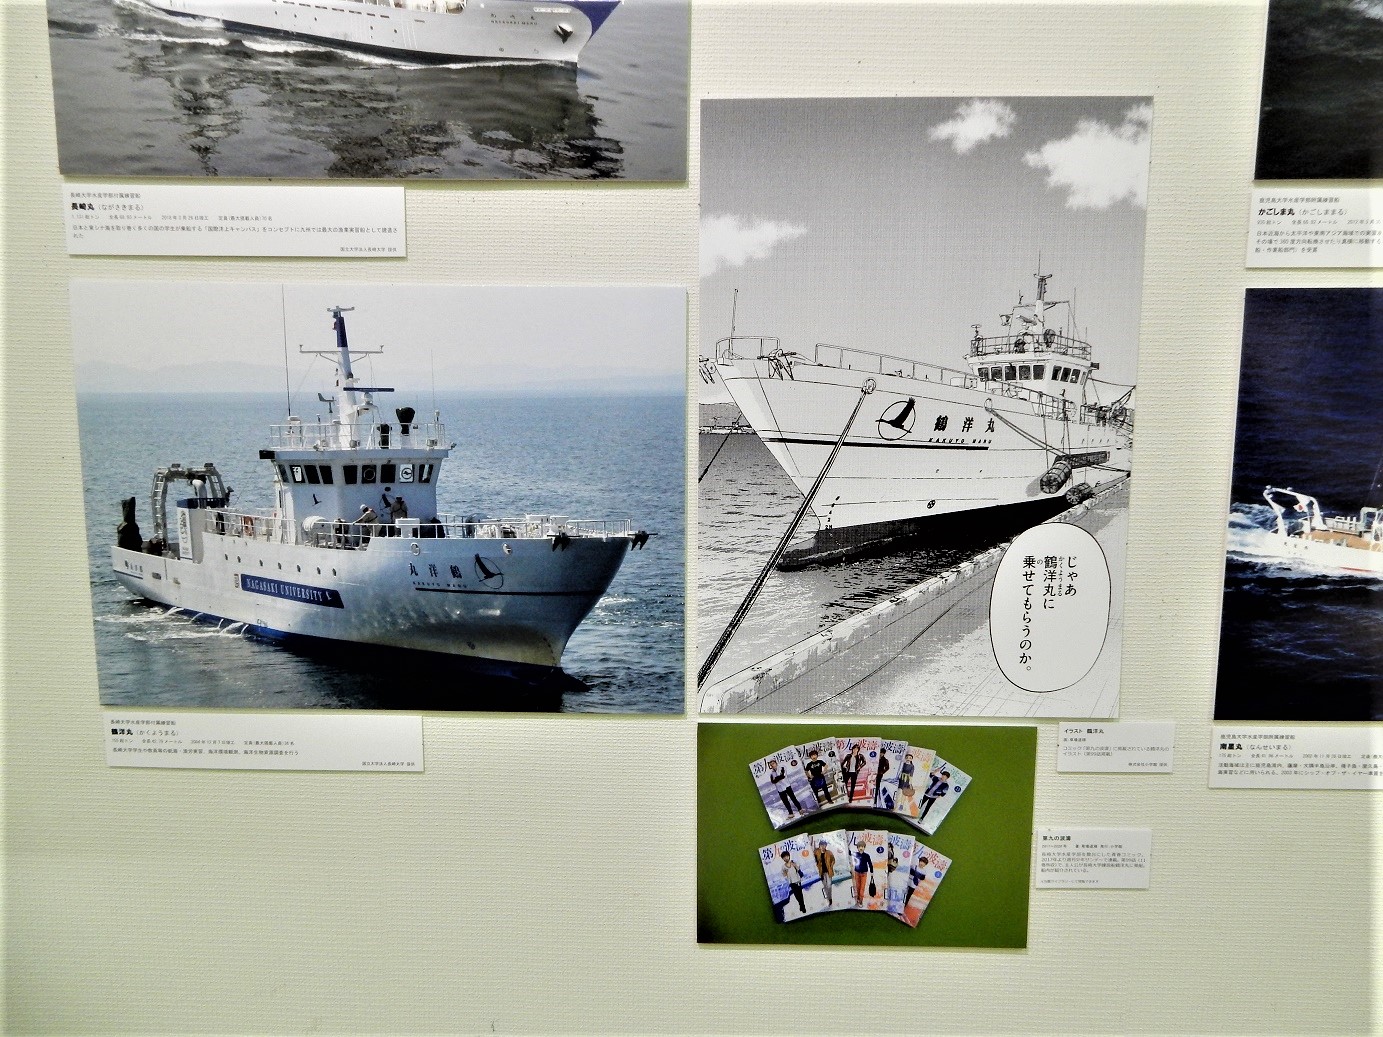 企画展にて草場道輝先生のｲﾗｽﾄ 鶴洋丸 を展示中 帆船日本丸 横浜みなと博物館